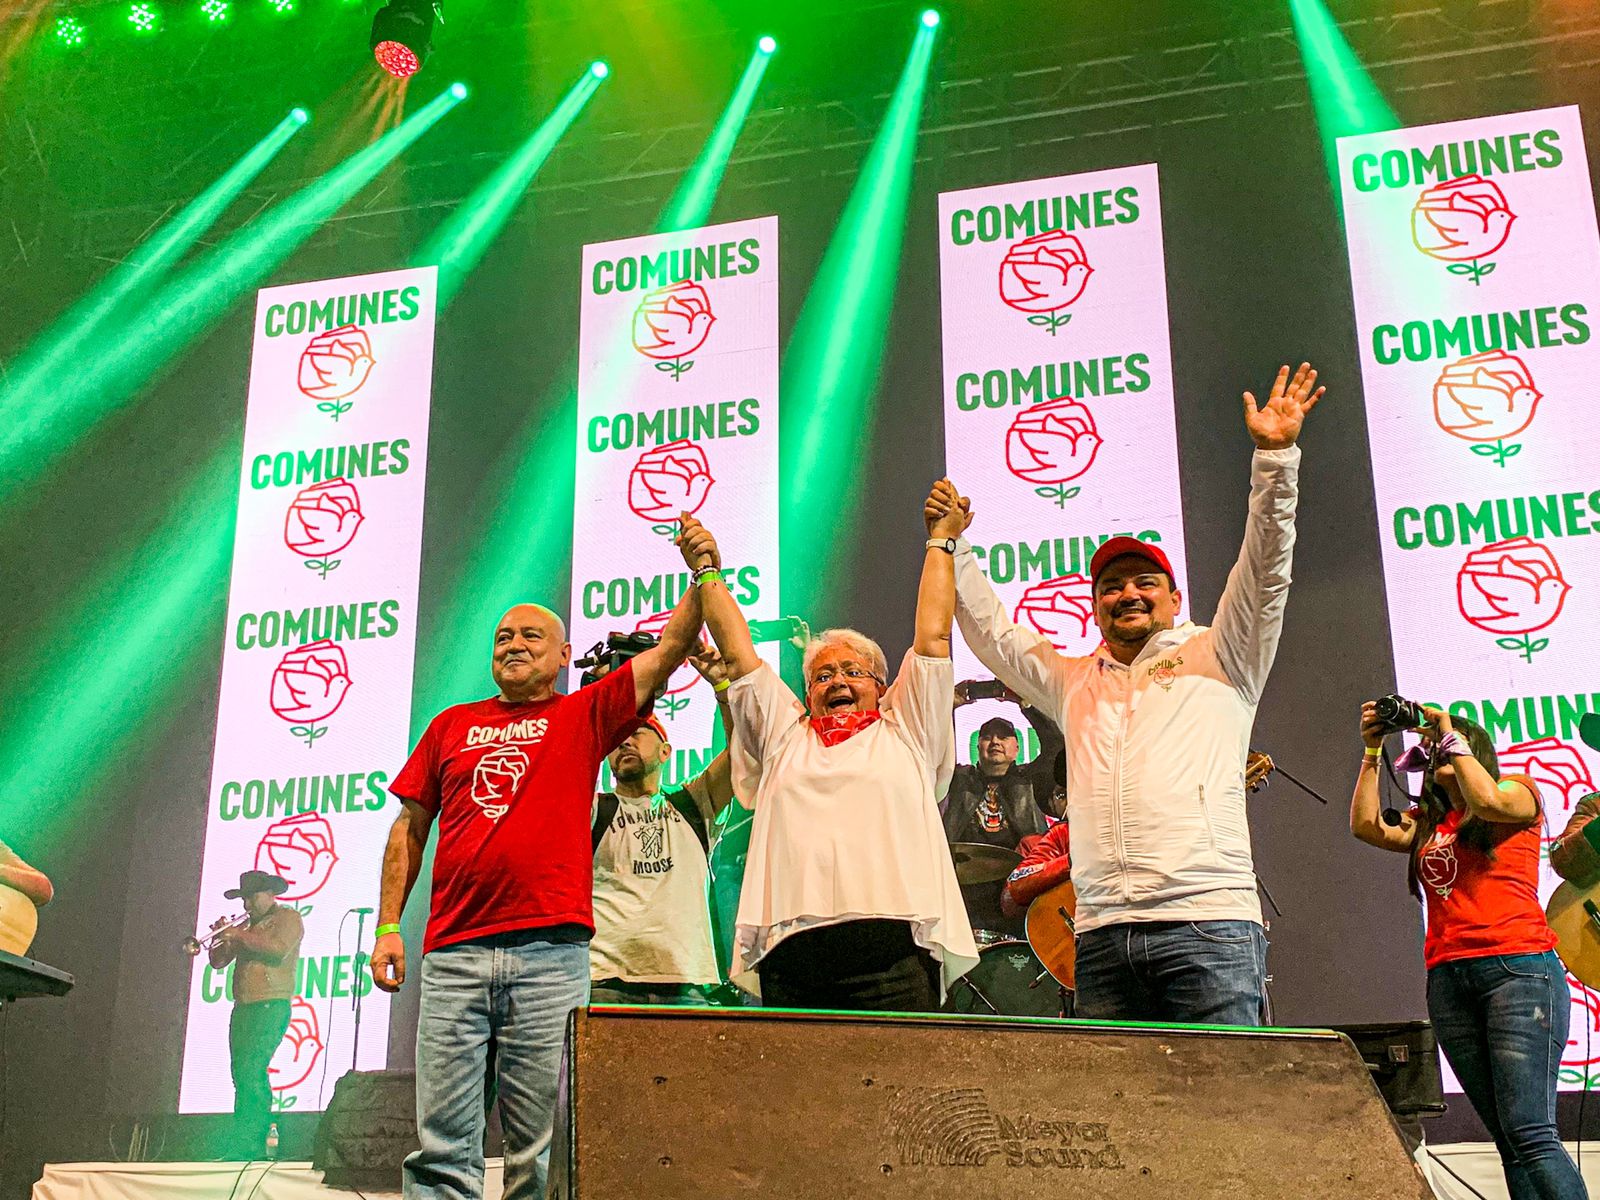 Imelda Daza Cotes recibió multitudinario apoyo en los cierres de campaña del partido Comunes en Barranquilla y Bogotá